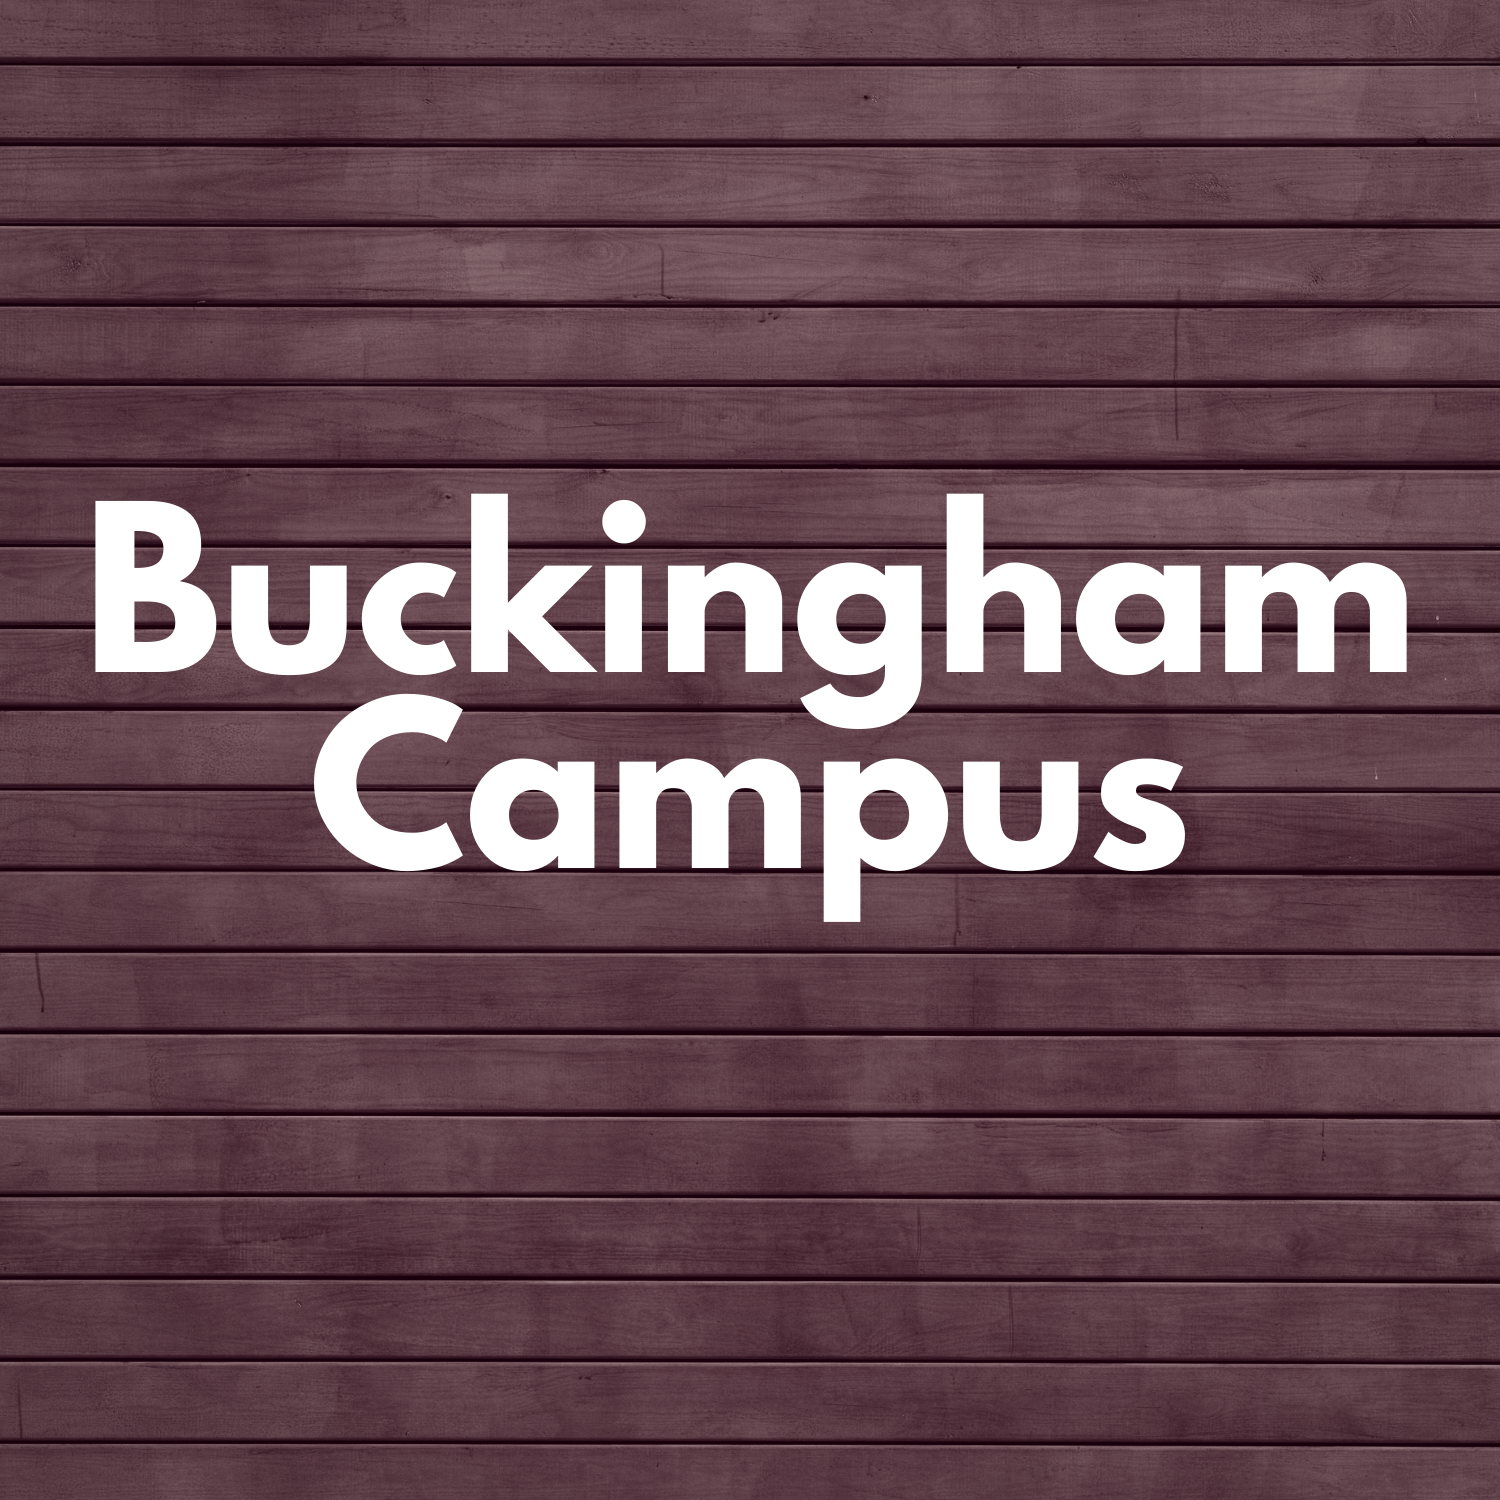 Buckingham Campus